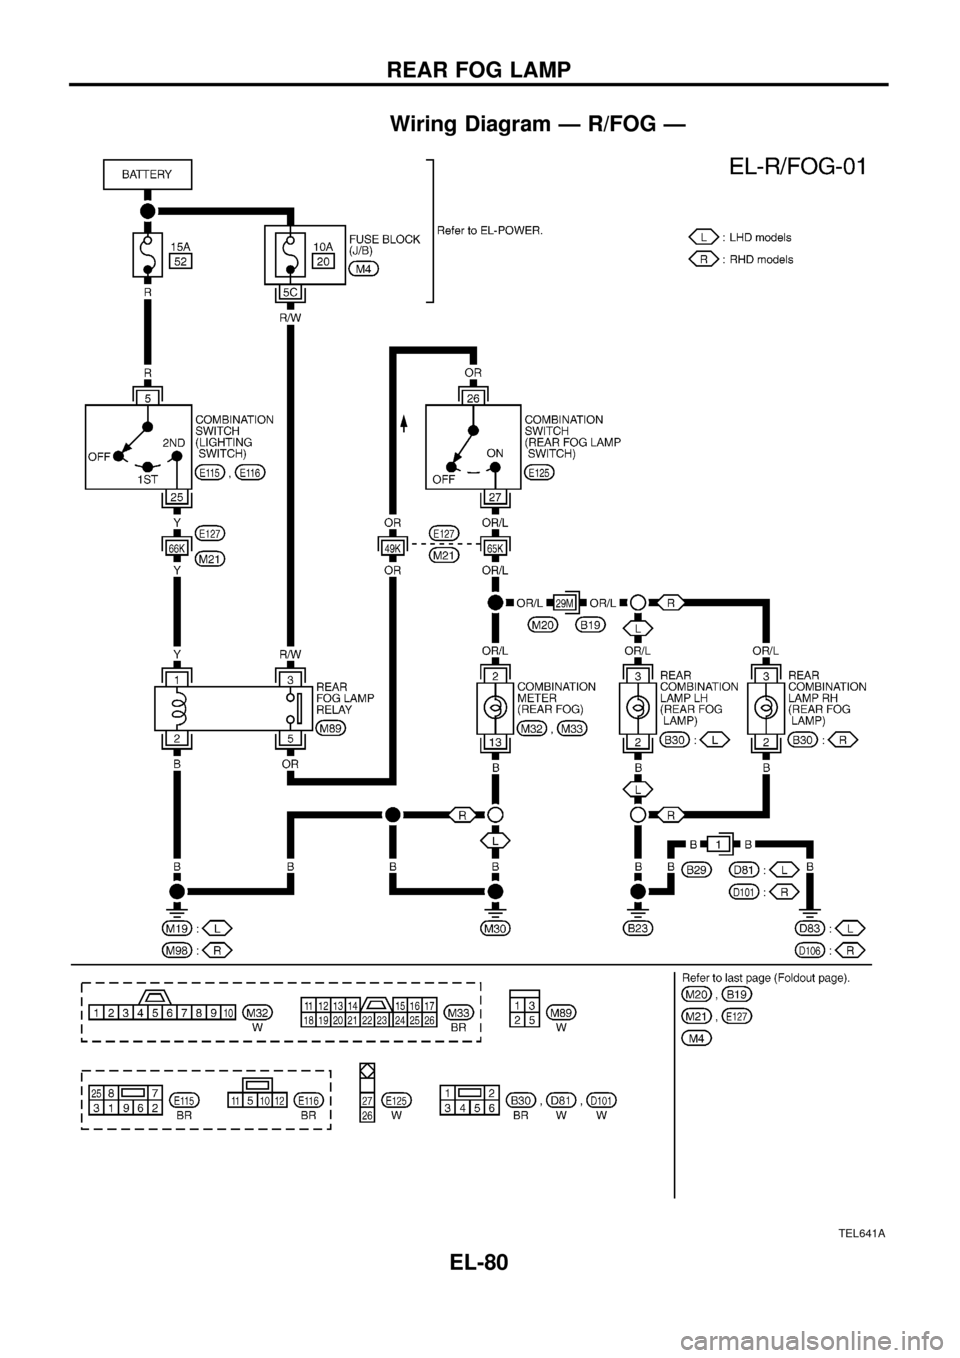 NISSAN PATROL 1998 Y61 / 5.G Electrical System Owners Manual Wiring Diagram Ð R/FOG Ð
TEL641A
REAR FOG LAMP
EL-80 